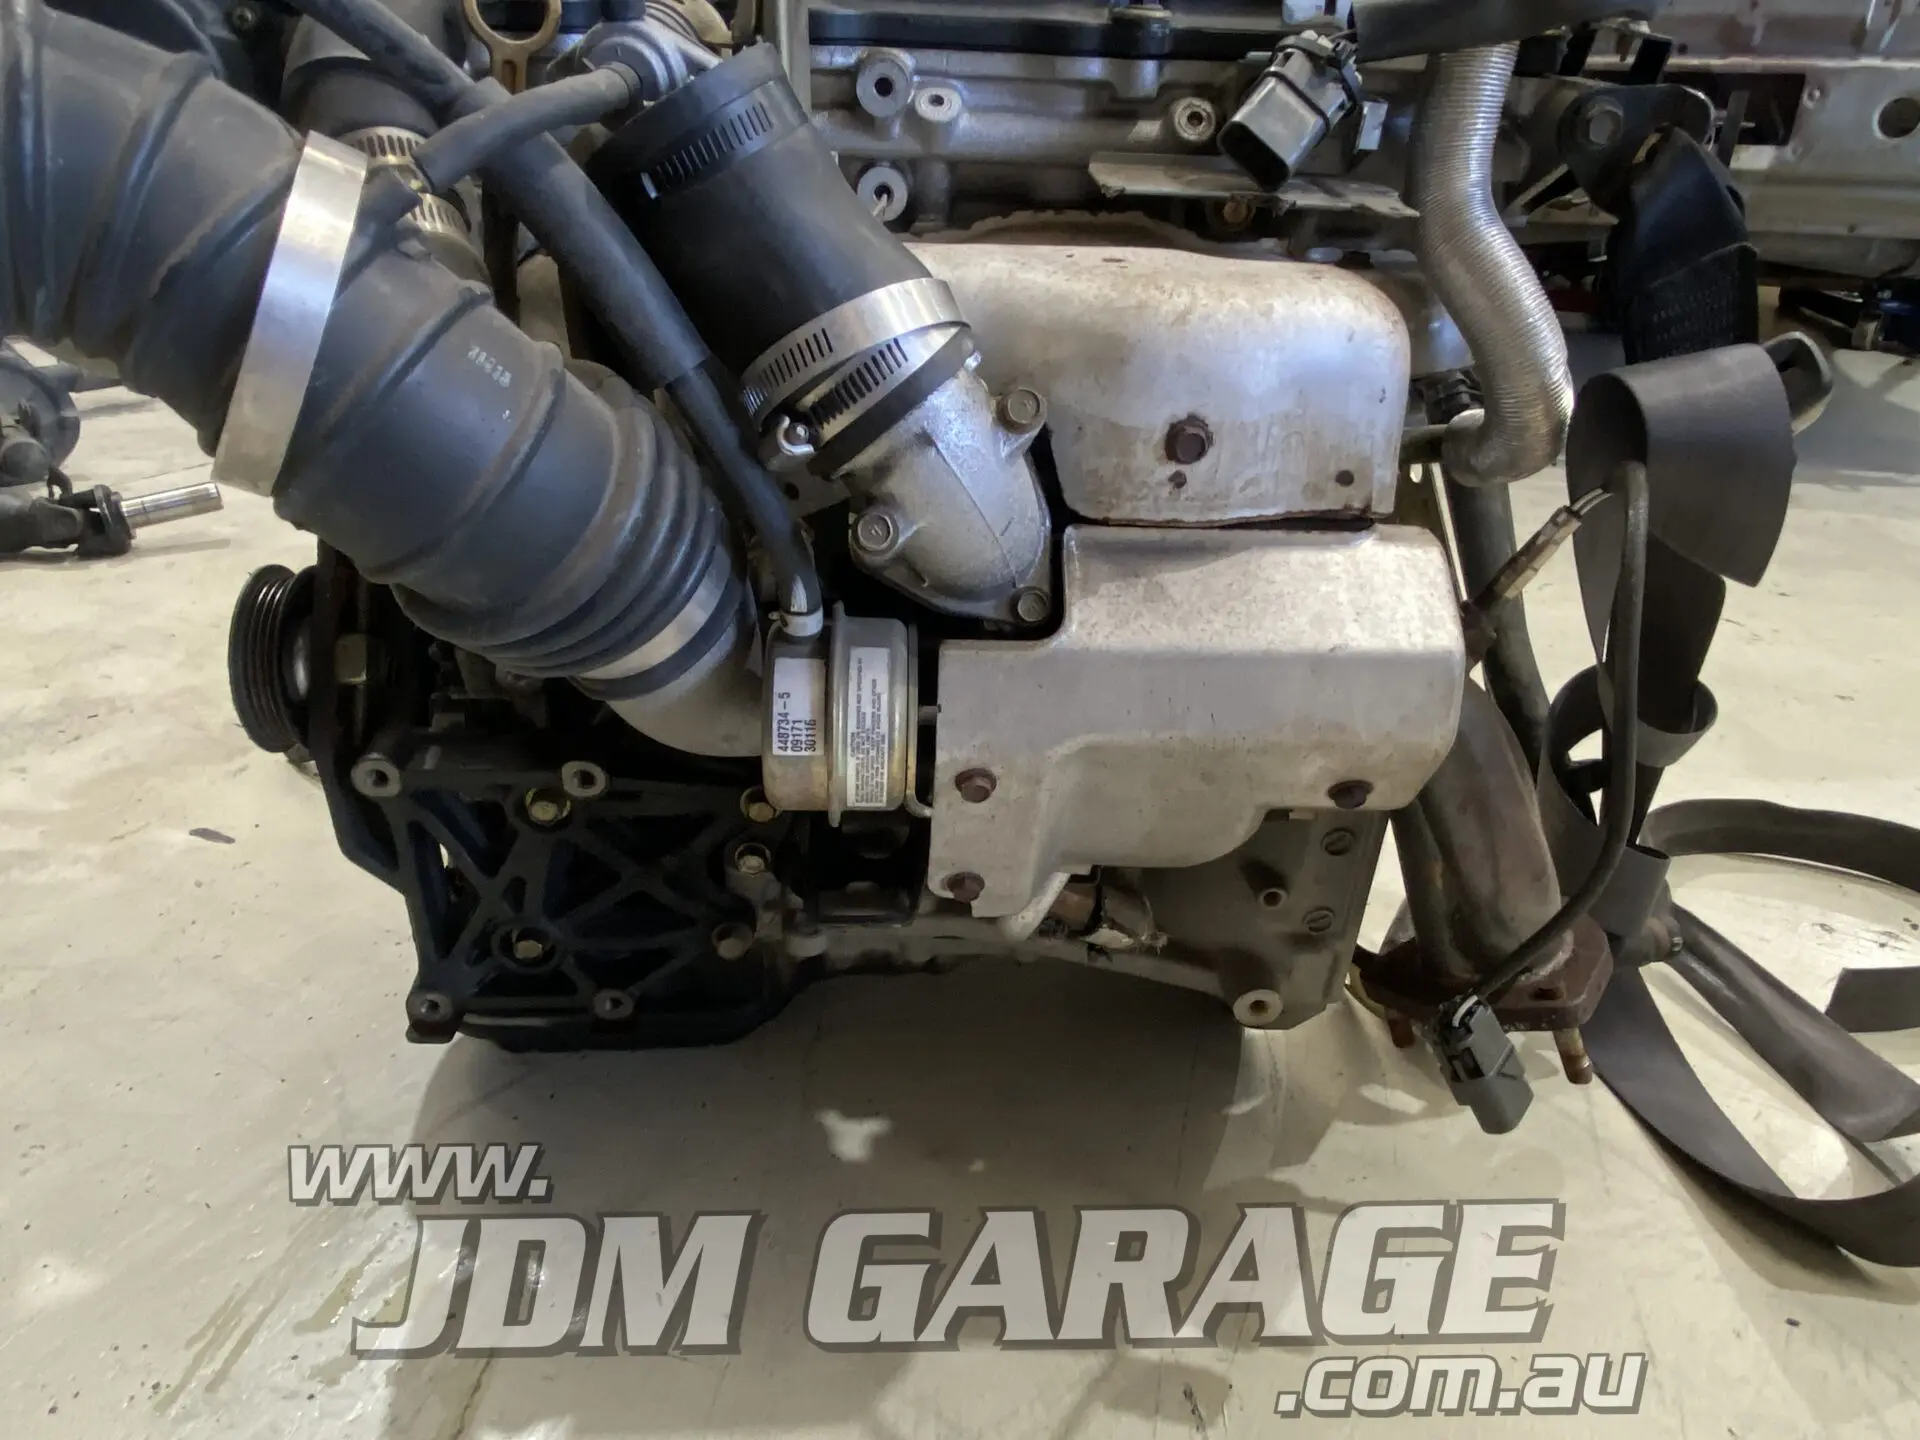 S15 SR20DET Complete Engine - JDM Garage Australia